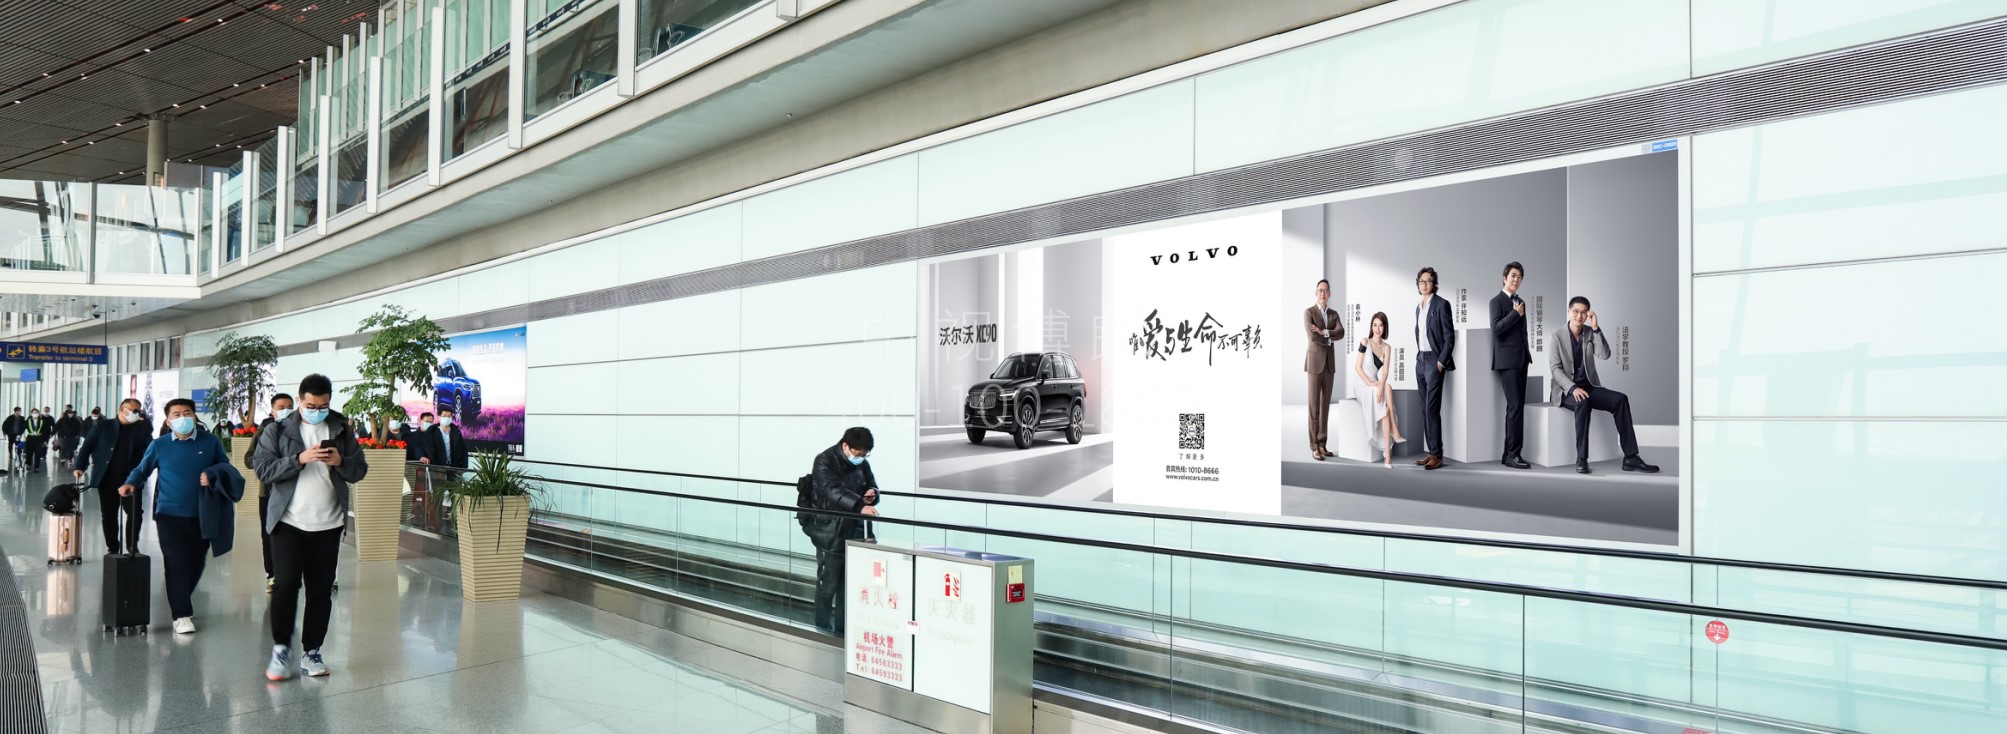 北京首都机场广告-T3C到达走廊灯箱